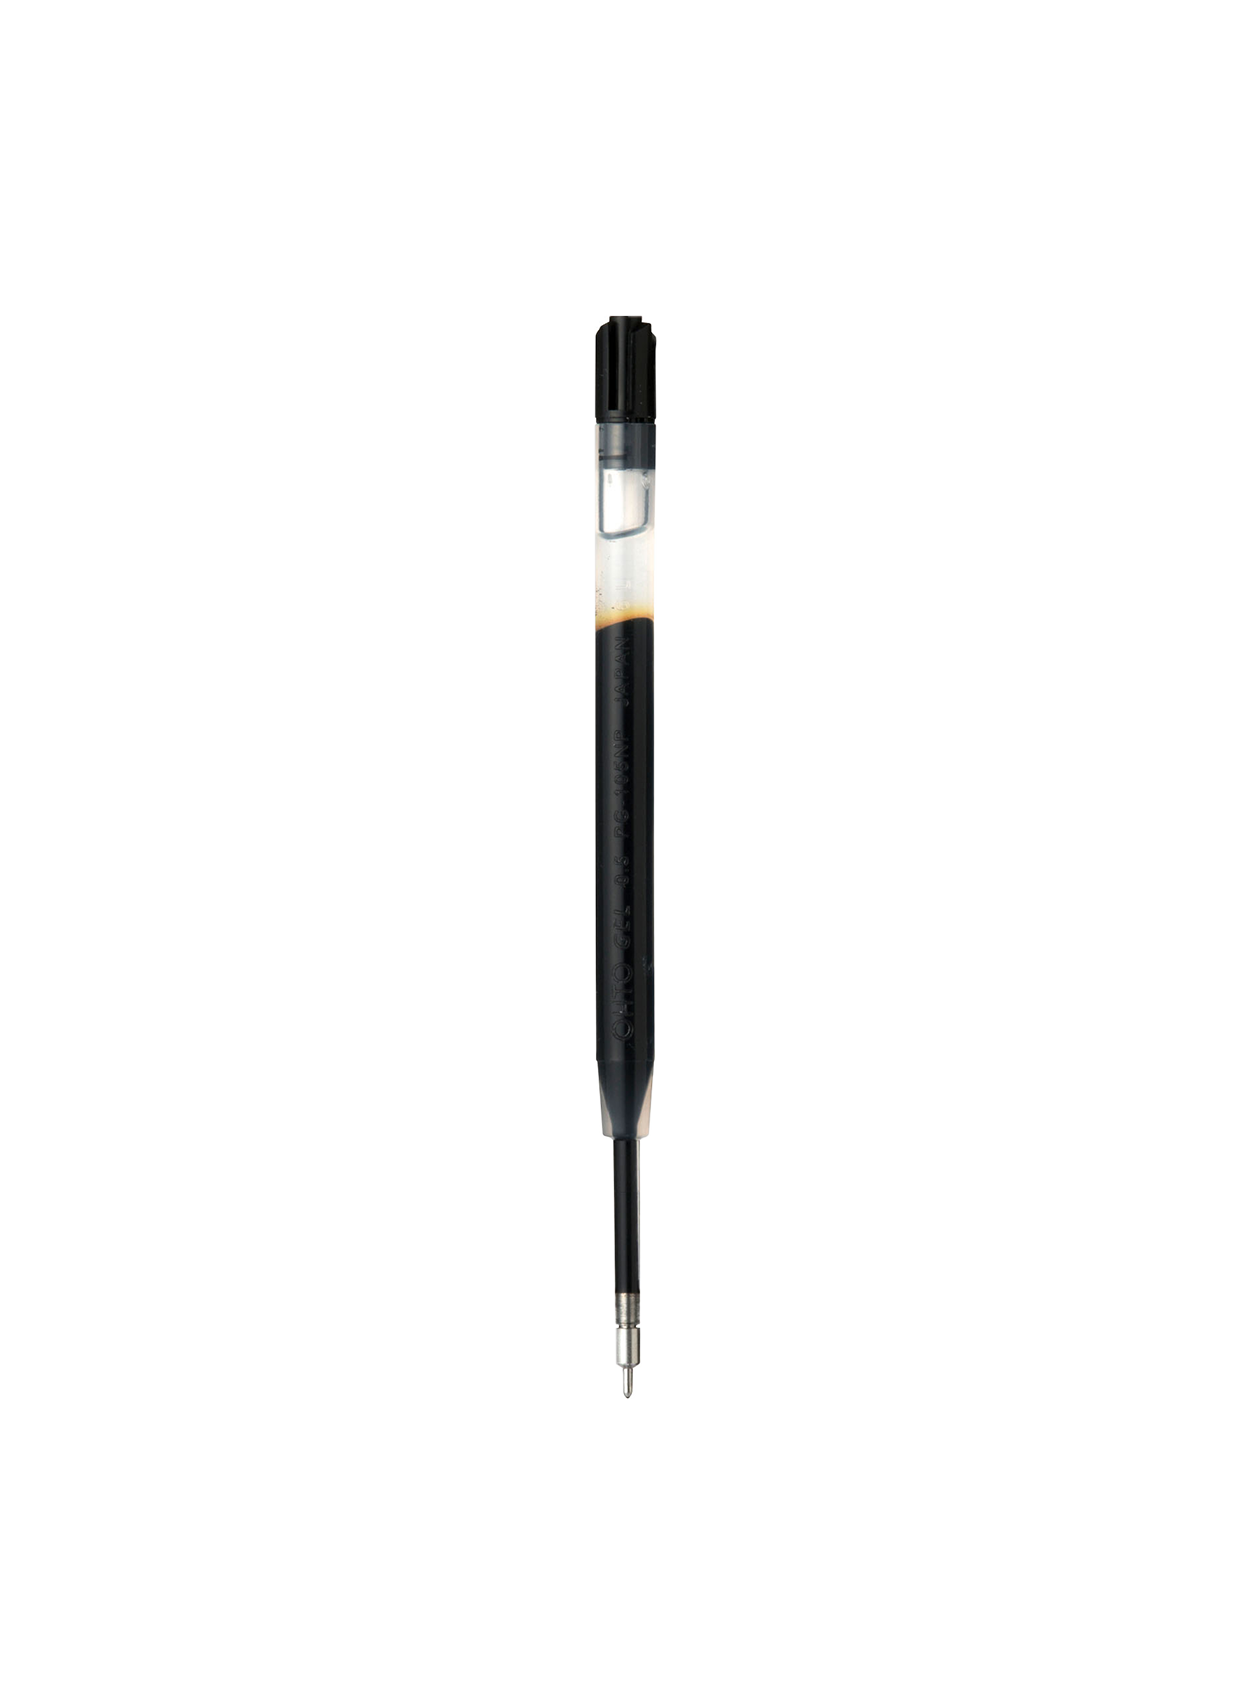 Mark’Style Metal Ballpoint Pen Refill